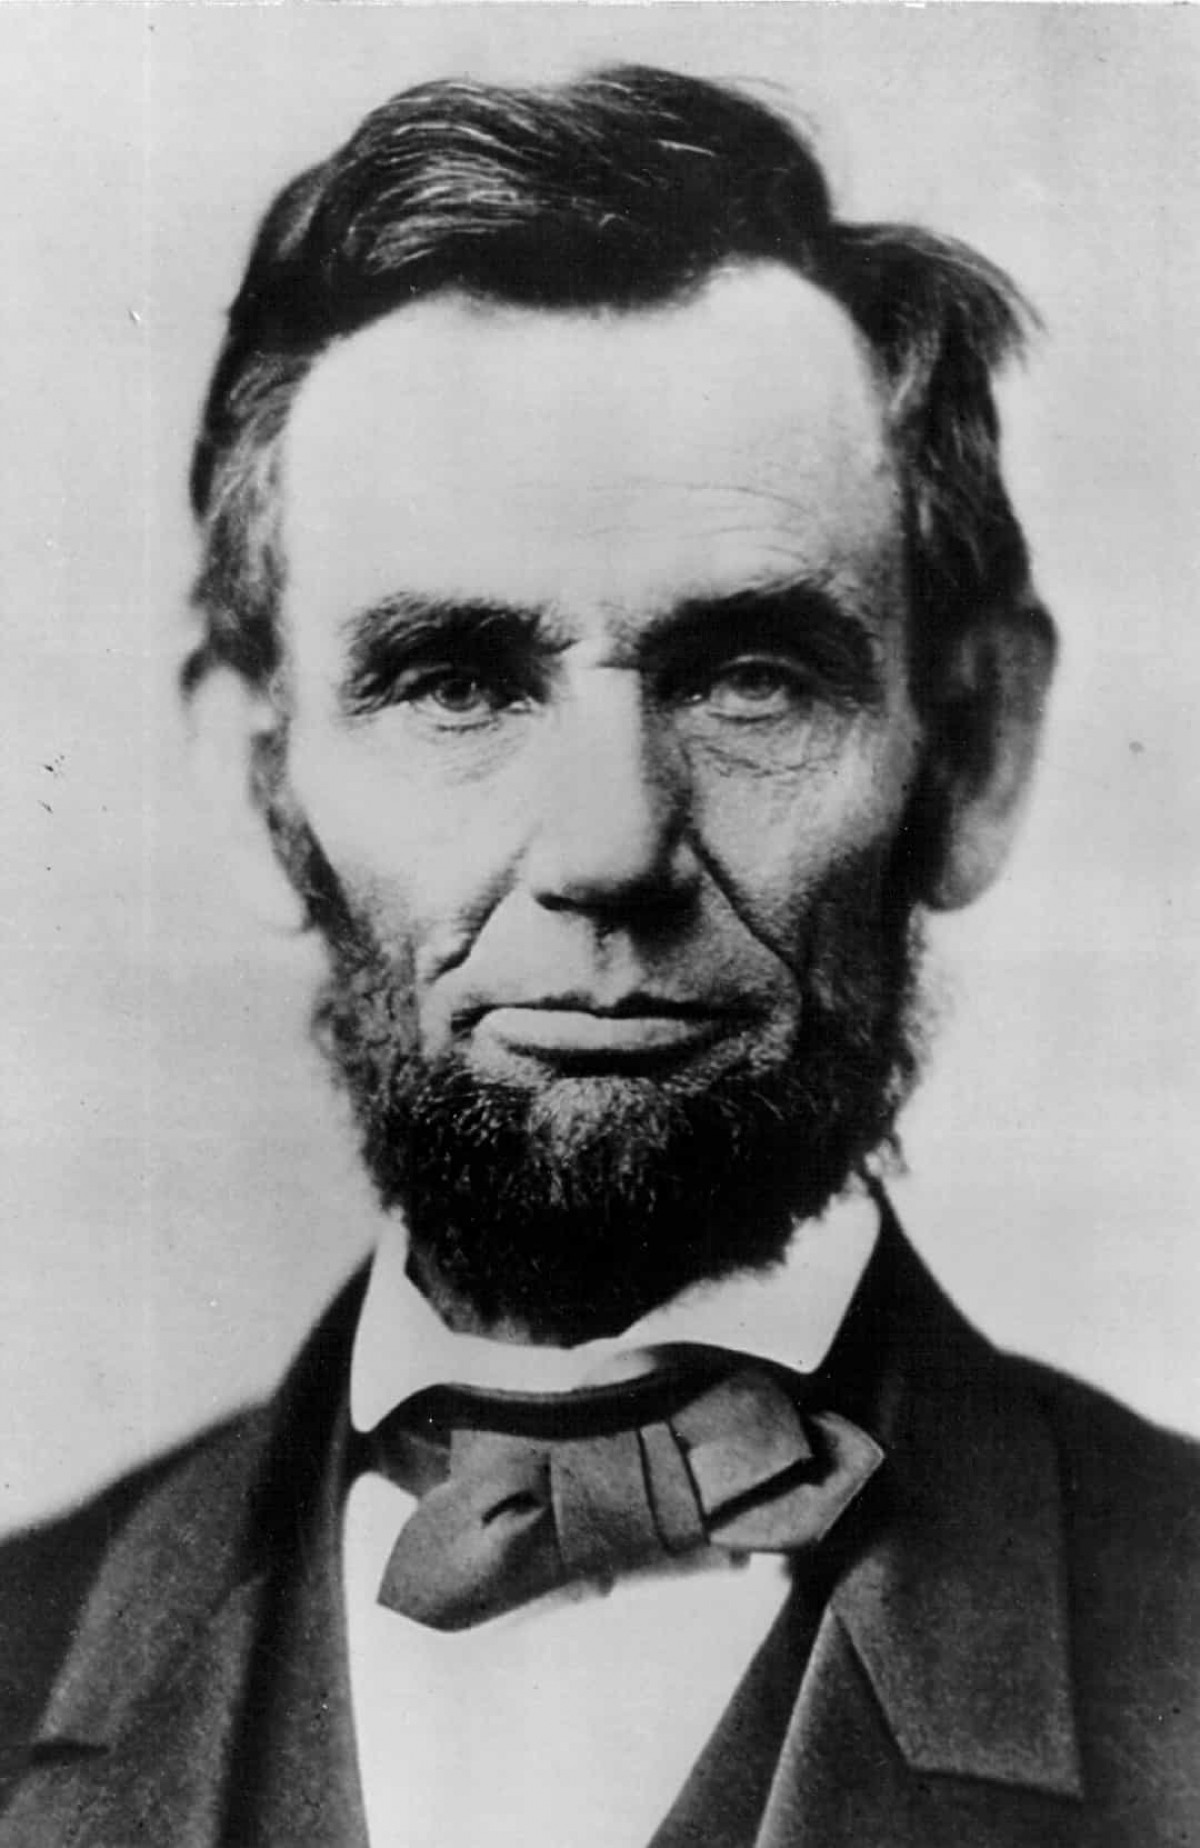 Vụ ám sát Tổng thống Abraham Lincoln (ngày 14/4/1865). John Wilkes Booth, một diễn viên người Mỹ tại Maryland, là người đã ám sát Tổng thống Abraham Lincoln tại Ford's Theatre, Washington DC vào ngày 14/4/1865. Ông Lincoln mất ngày hôm sau vì vết đạn duy nhất bị bắn vào đầu.